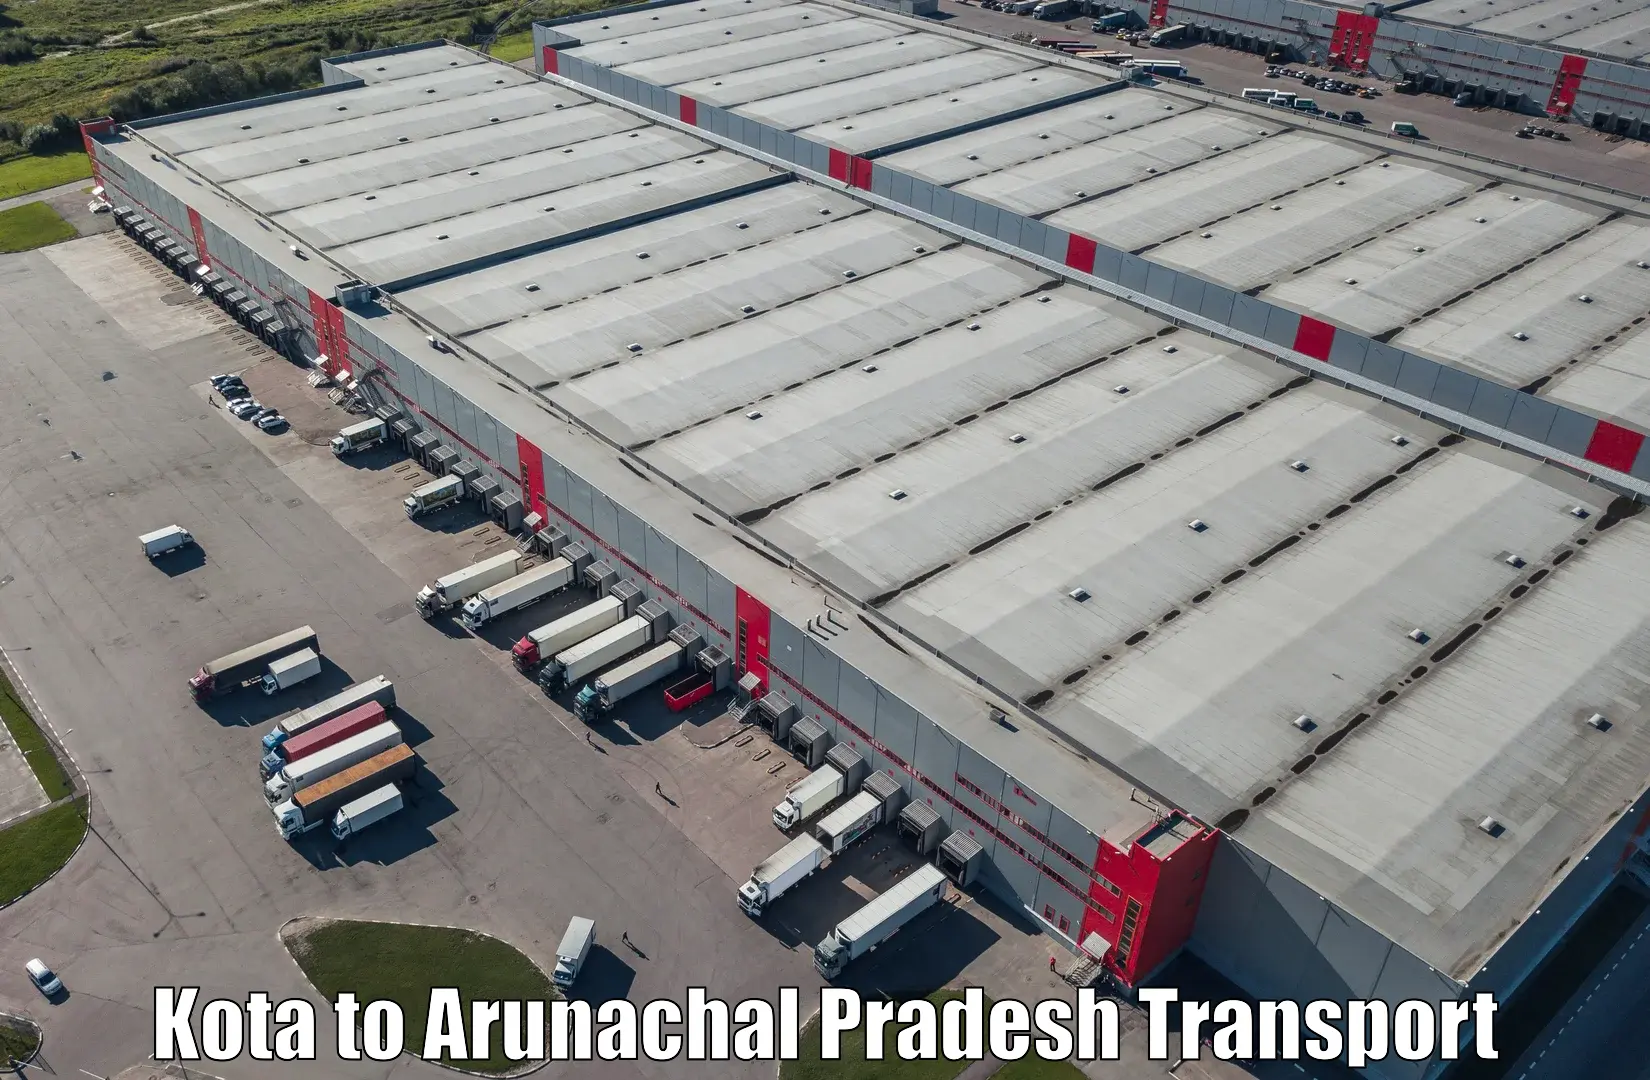 Truck transport companies in India Kota to Tawang